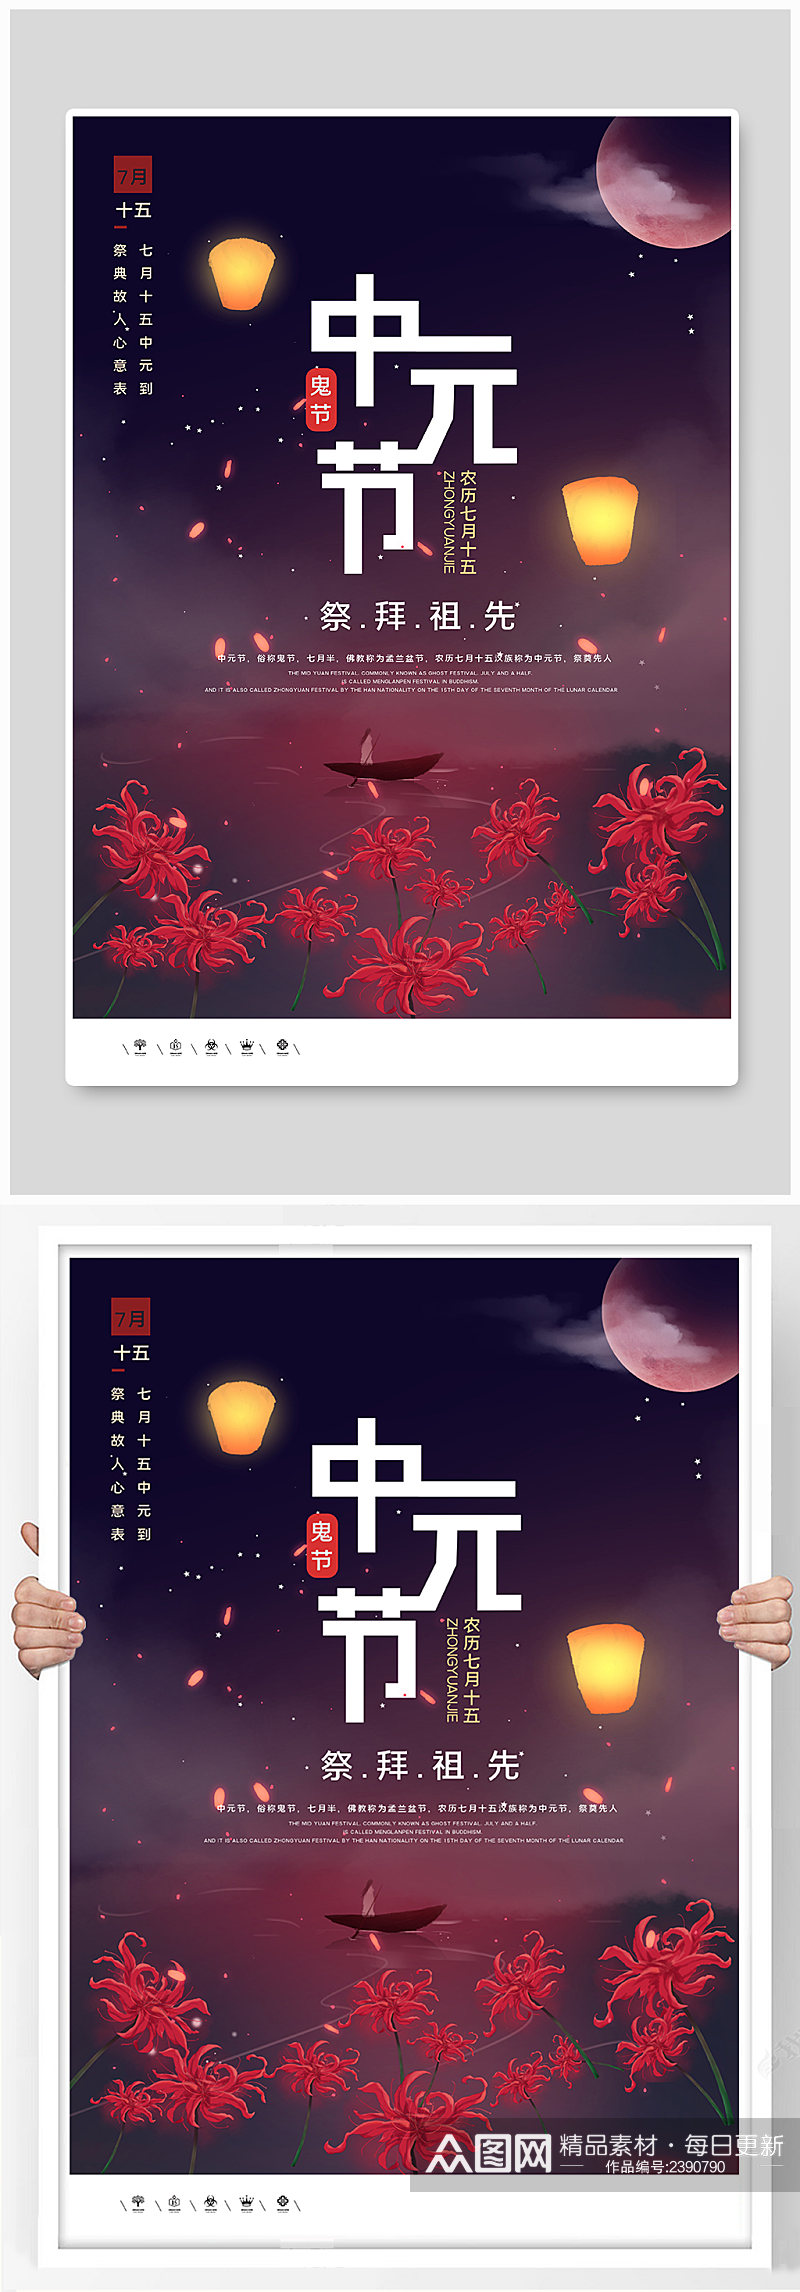 中元节创意时尚宣传海报素材